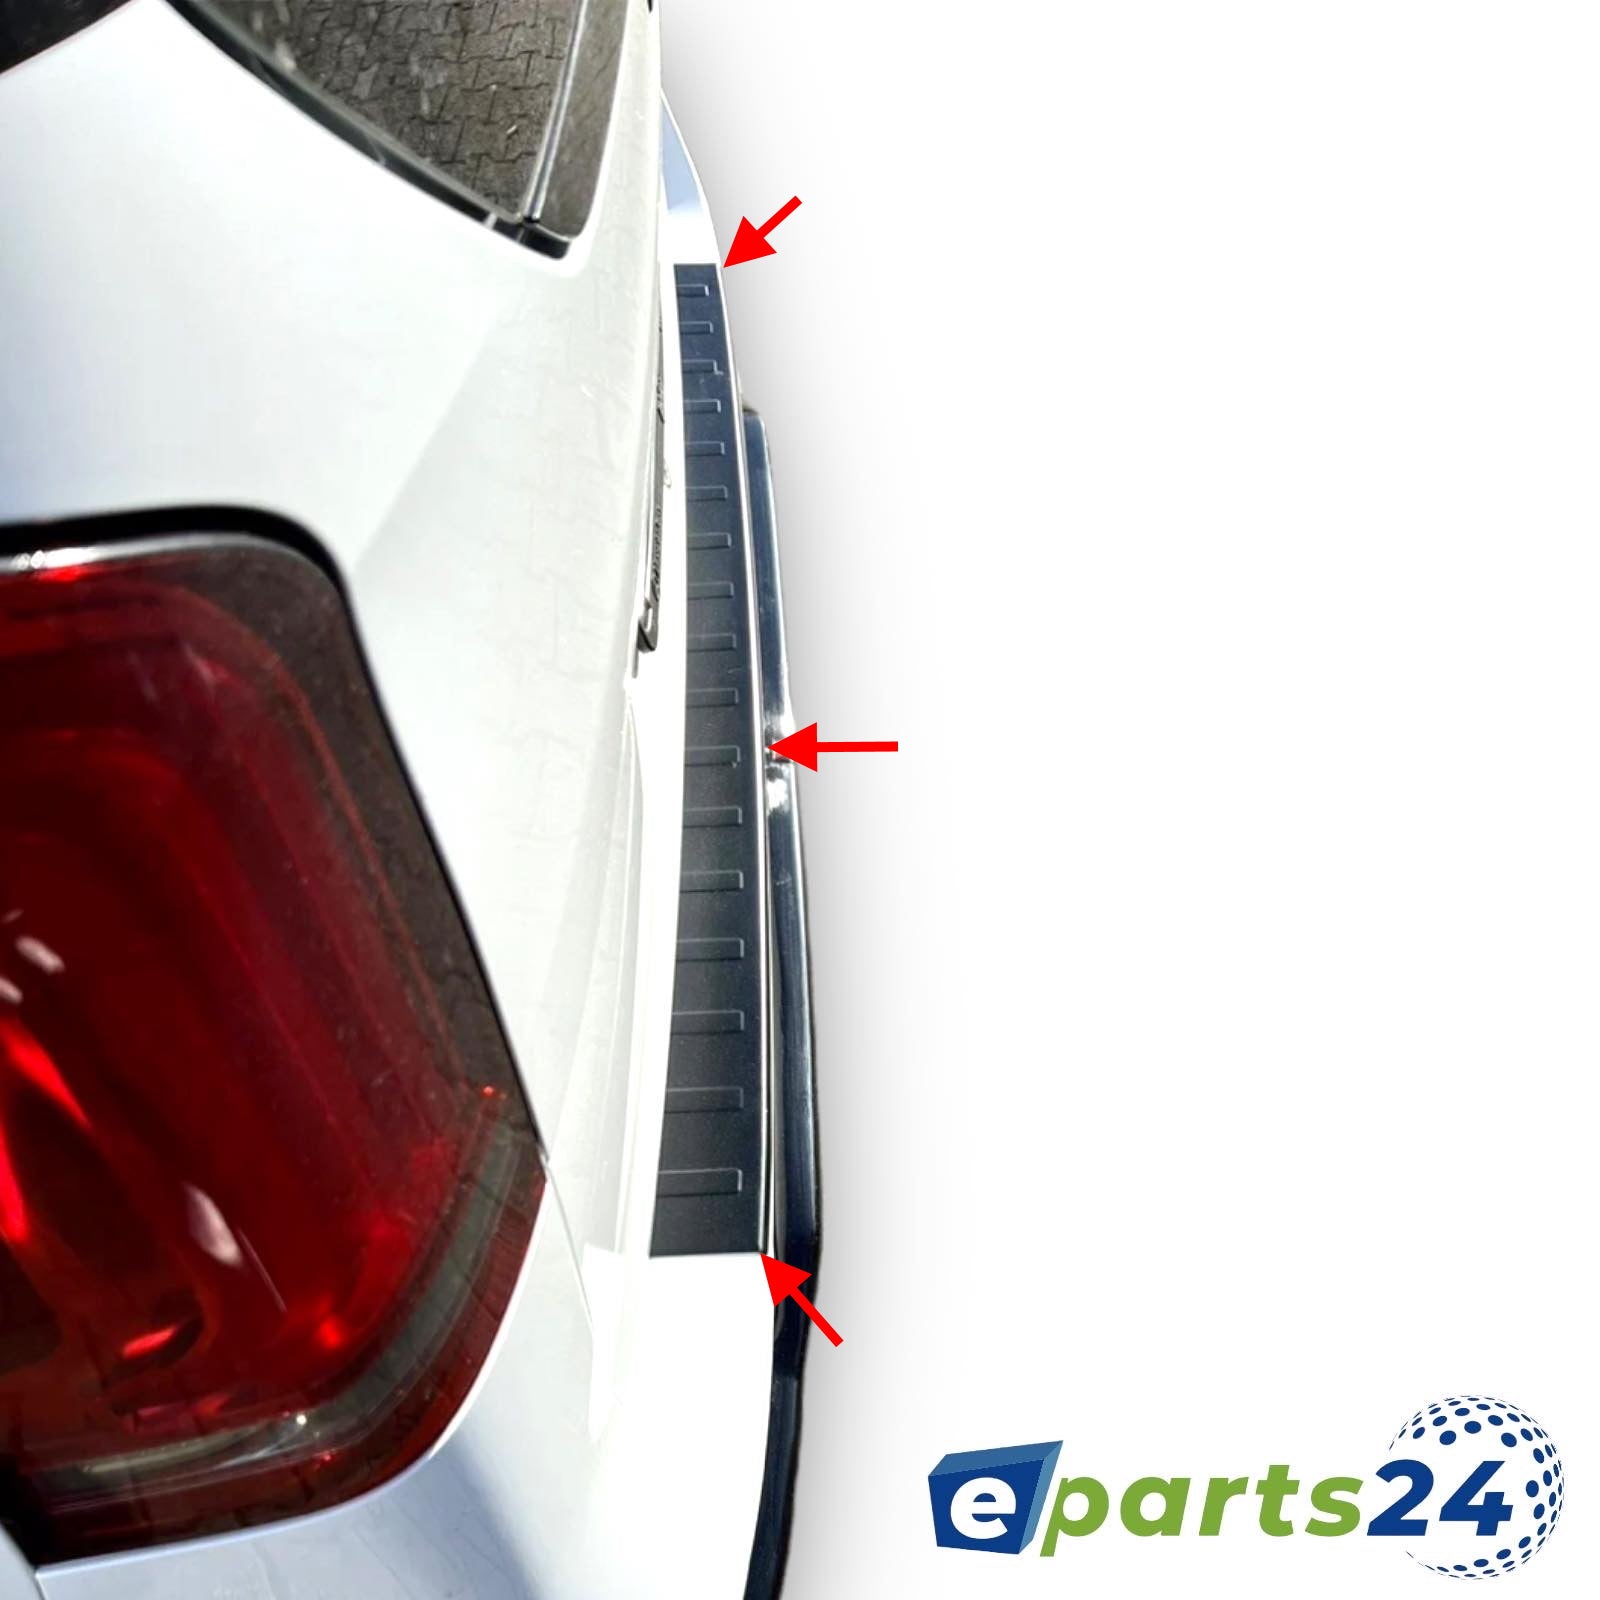 pul Tarraco schwarz Seat E-Parts24 matt 2018- ab Ladekantenschutz für – Heckschutz